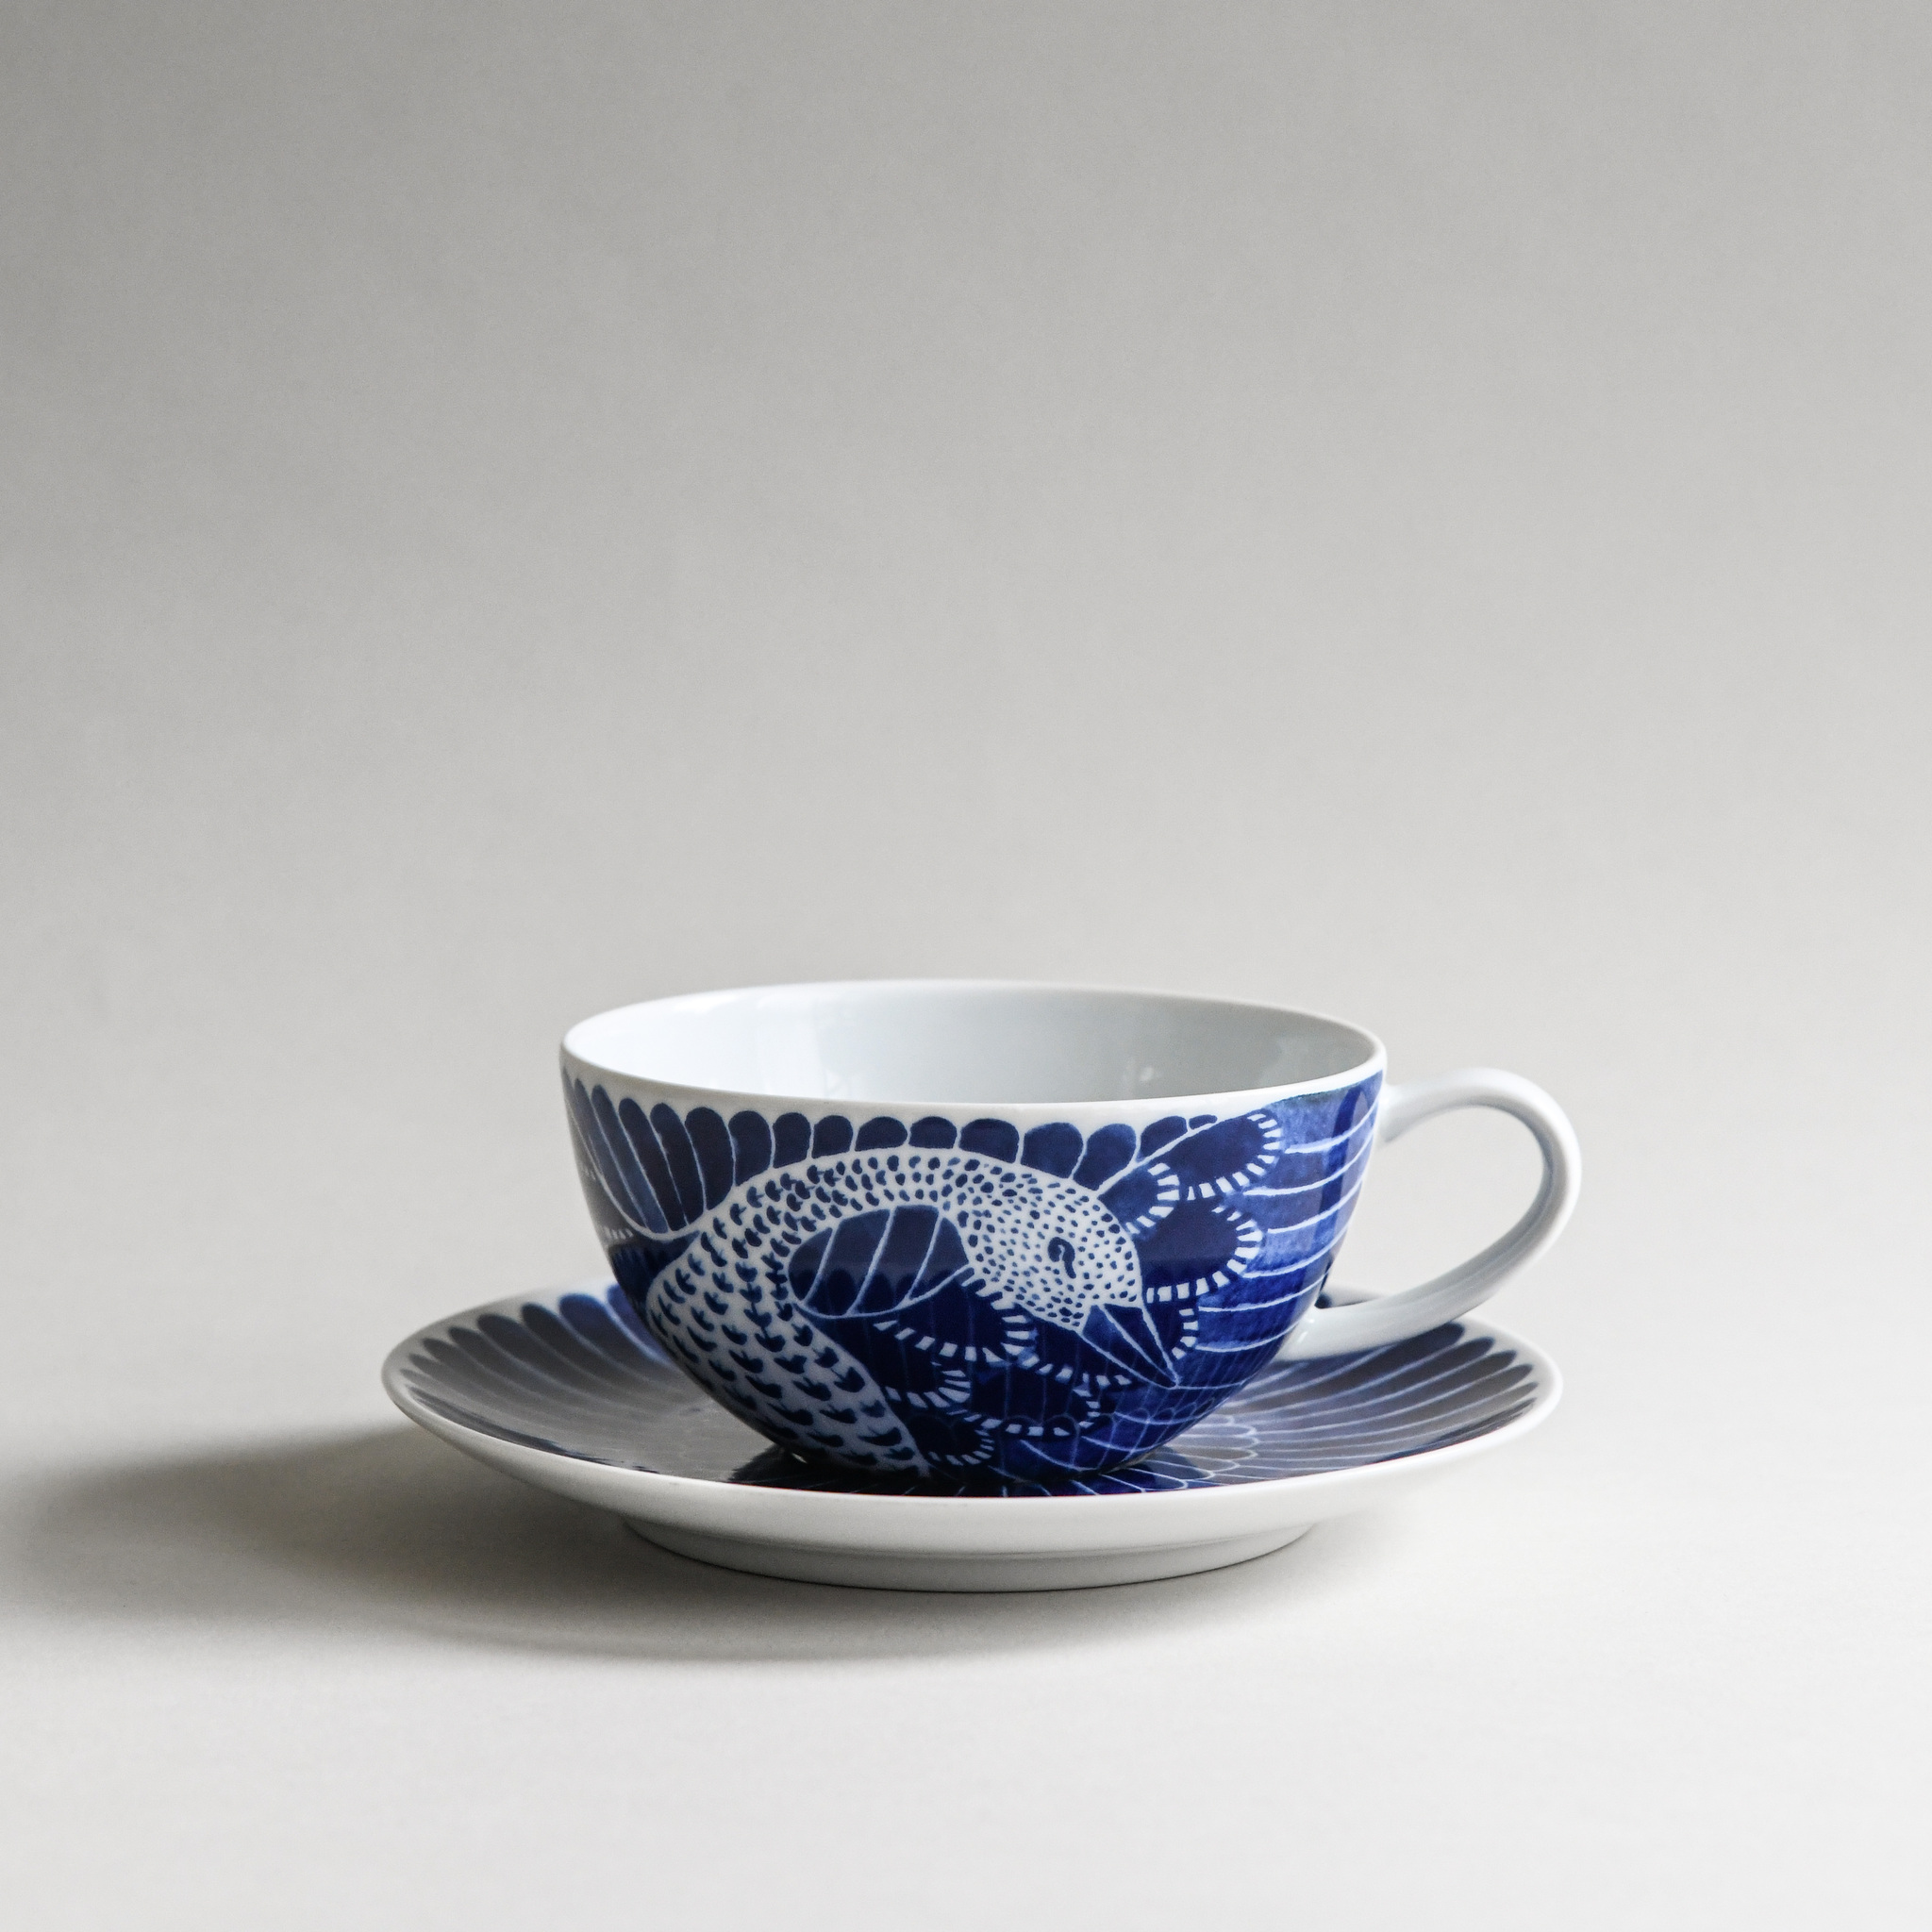 Selma tea cup with saucer